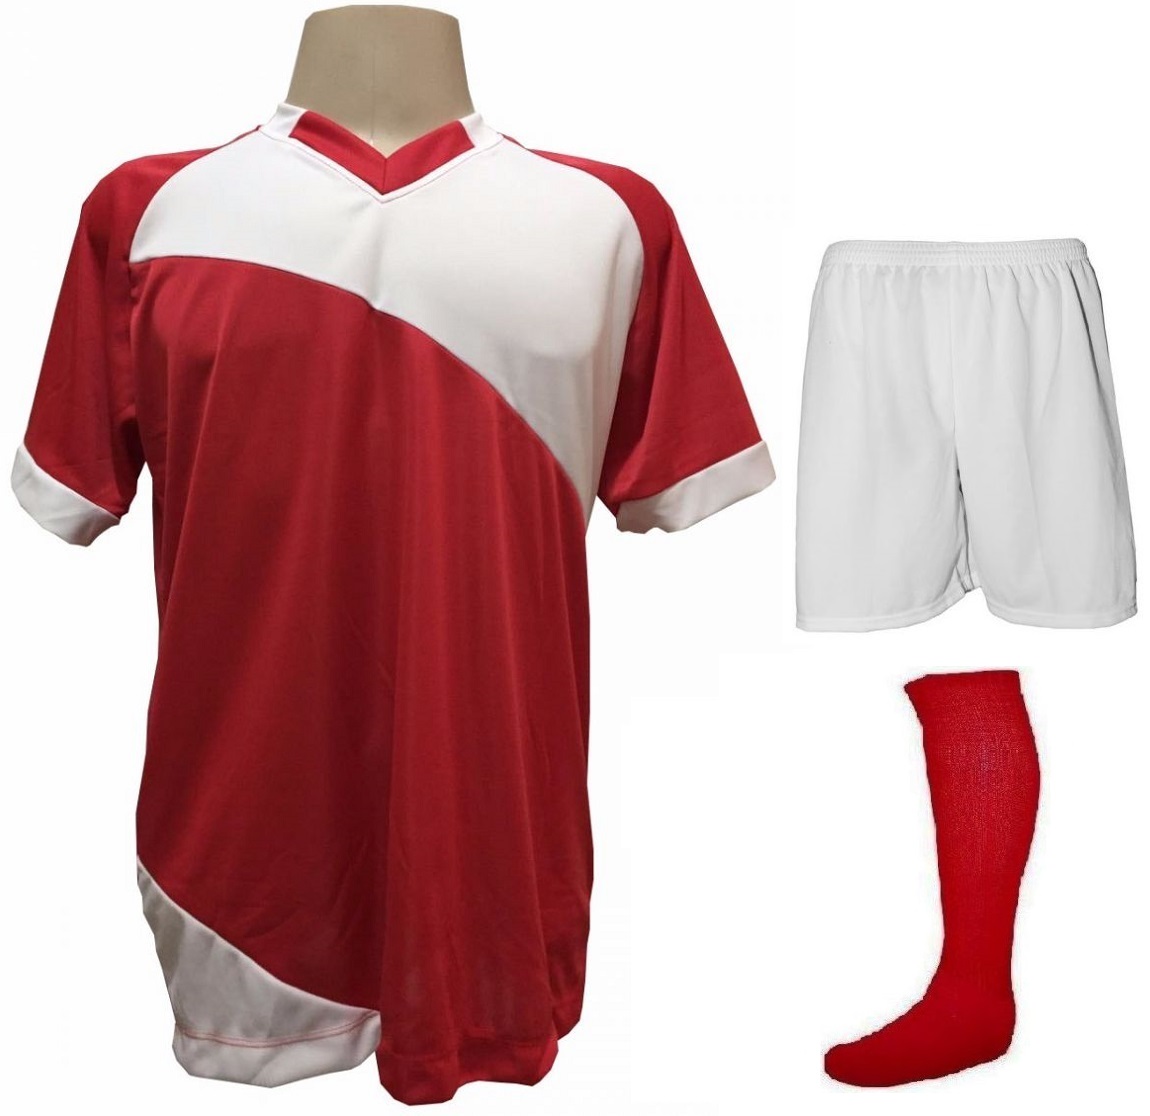 Fardamento Completo modelo Bélgica 20+1 (20 camisas Vermelho/Branco + 20 calções modelo Madrid Branco + 20 pares de meiões Branco + 1 conjunto de goleiro) + Brindes